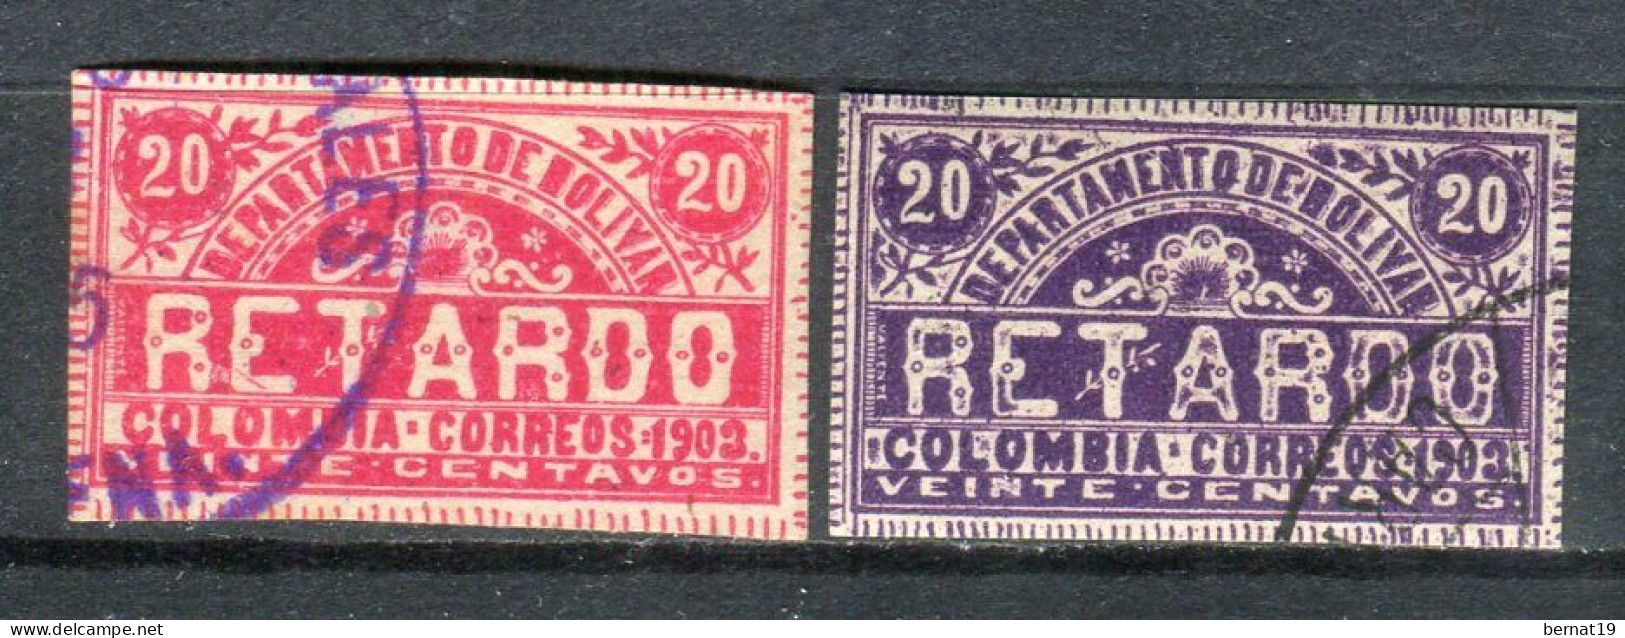 Colombia Departamento De Bolivar Retardo 1903. Yvert 1-2. - Colombie